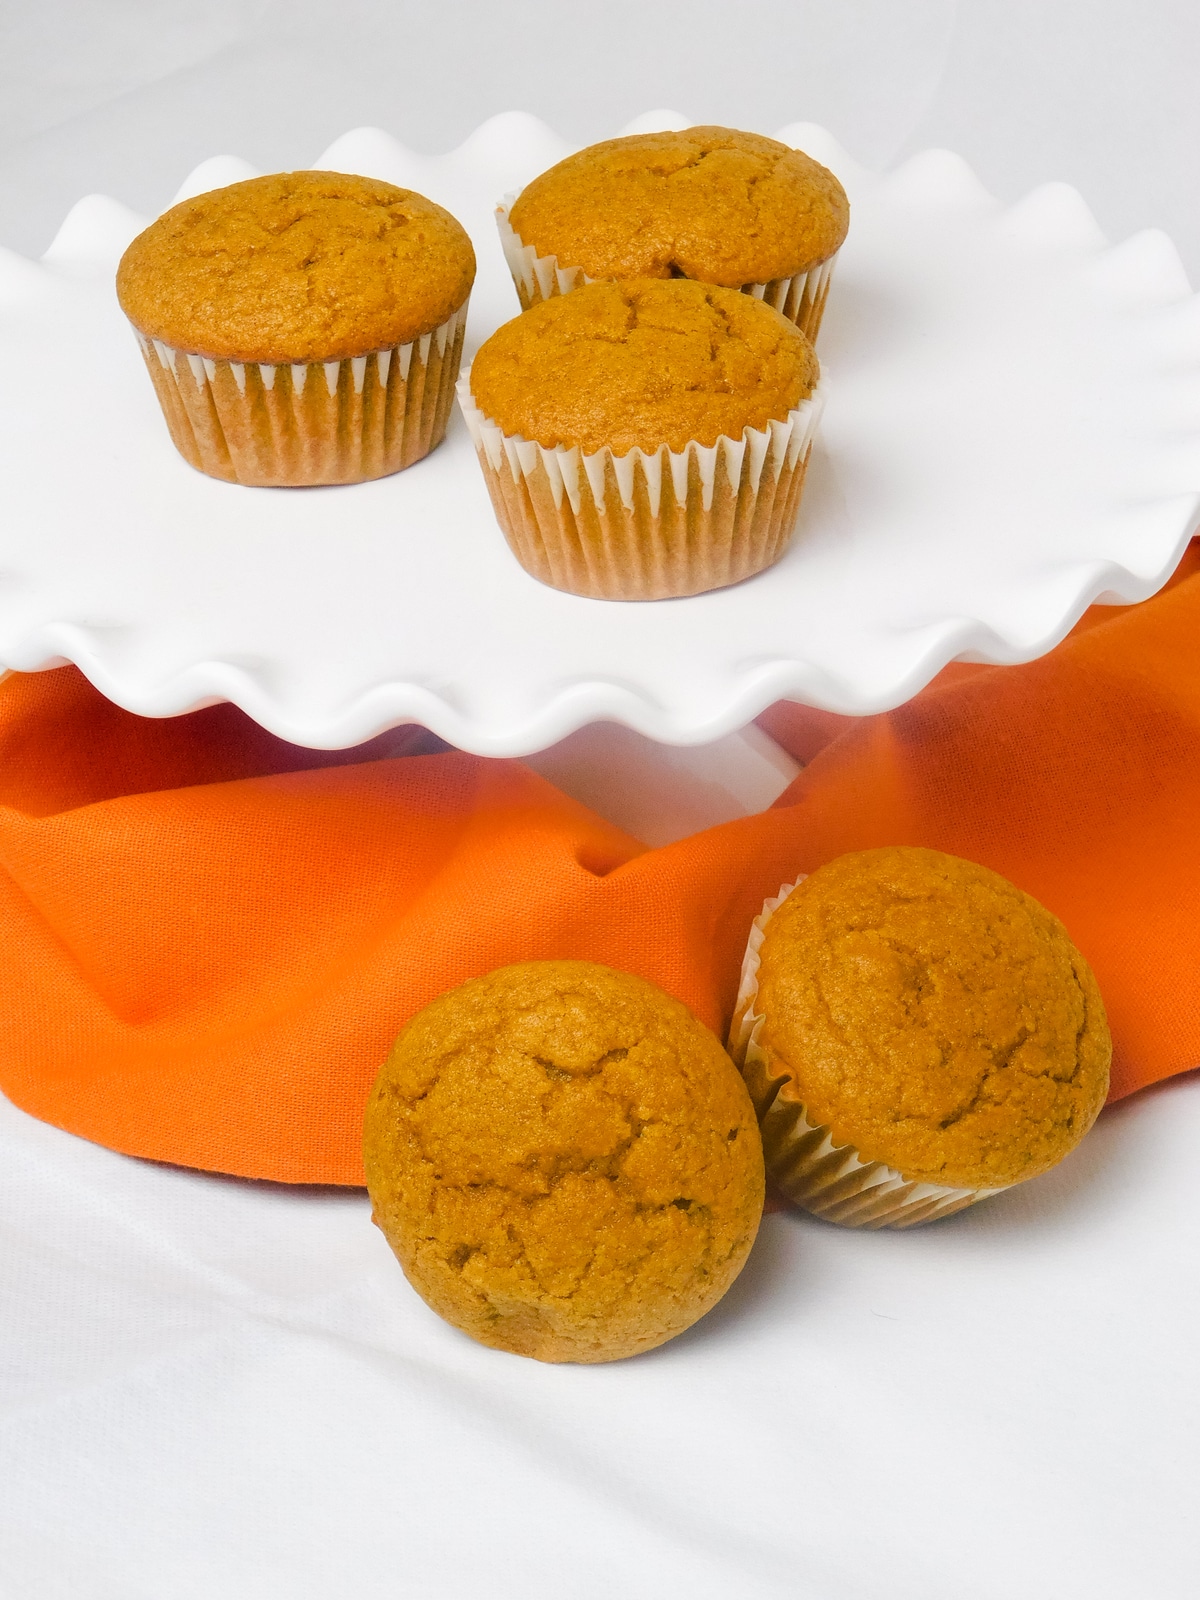 Pumpkin muffins on platter